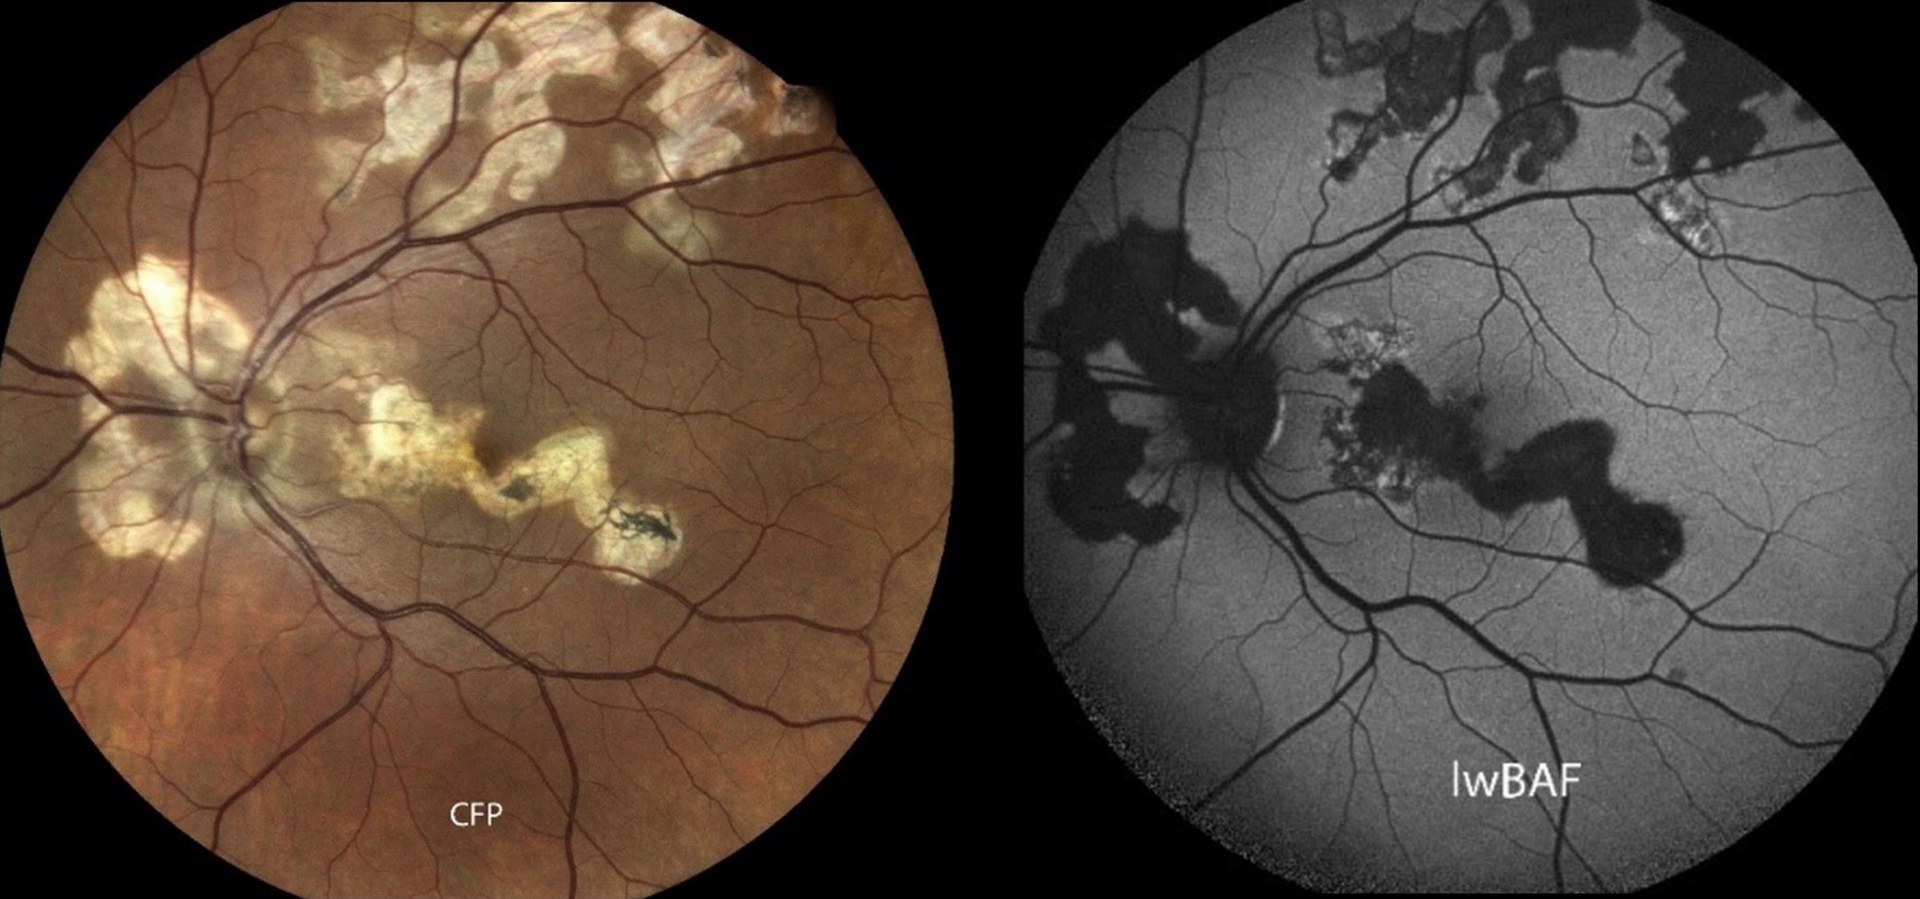 Das Bild zeigt ein von der seltenen serpiginösen Chorioretinopathie betroffenes Auge. - Der Name kommt von der „schlangenartigen“ Ausbreitung der Krankheit über den Augenhintergrund. In der Augenhintergrund-Fotografie (links) zeigen sich Narbenareale in einem hellen Gelbton. Aktive entzündliche Läsionen zeigen sich in der Fundusautofluoreszenz (rechts) meist als helle Bereiche.